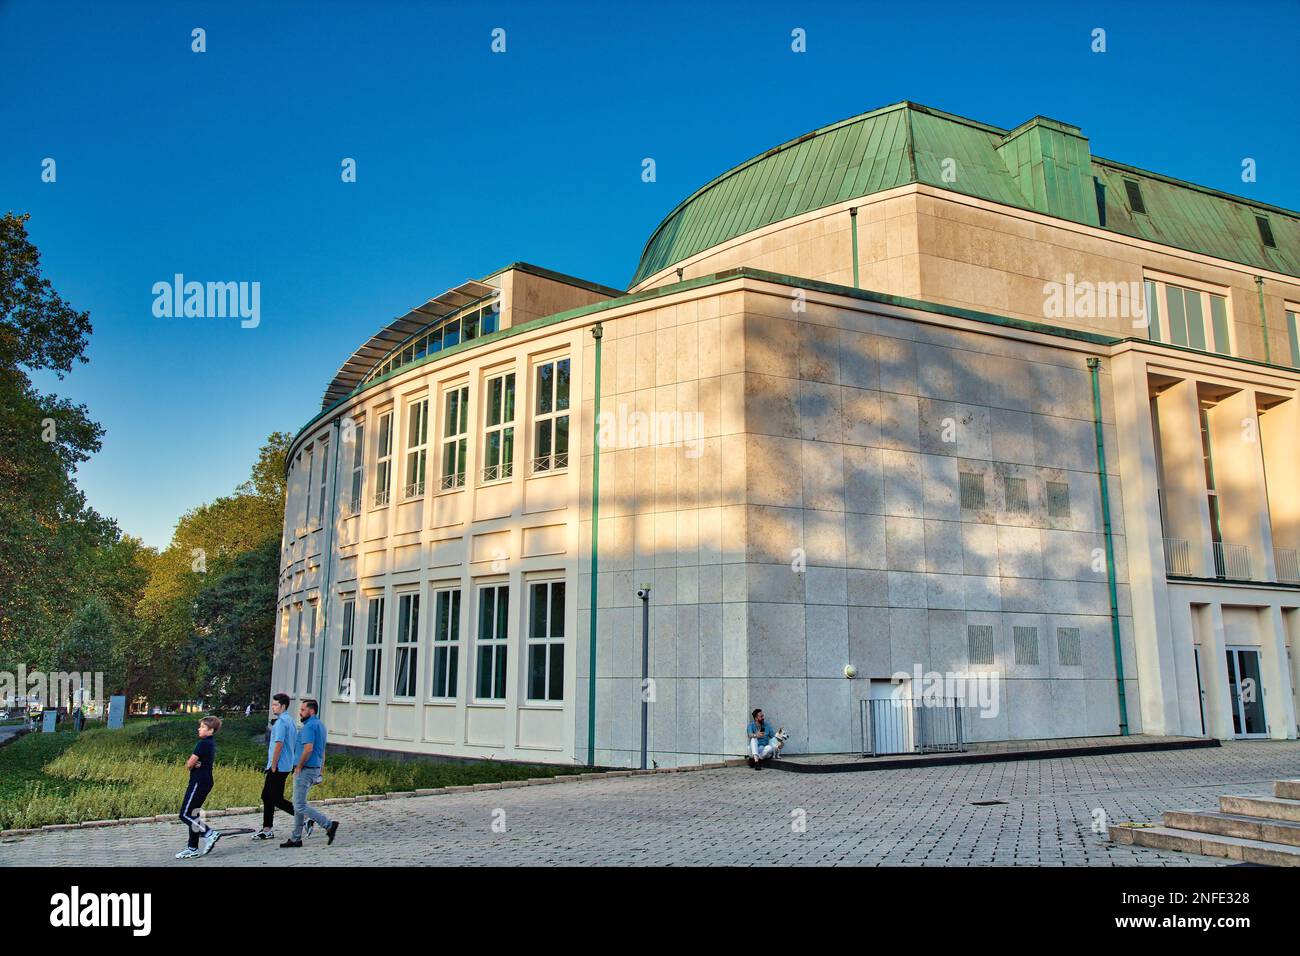 ESSEN, GERMANIA - 20 SETTEMBRE 2020: La gente visita il Teatro e la Filarmonica di Essen (in tedesco: Teatro e Filarmonica di Essen) in Germania. Foto Stock